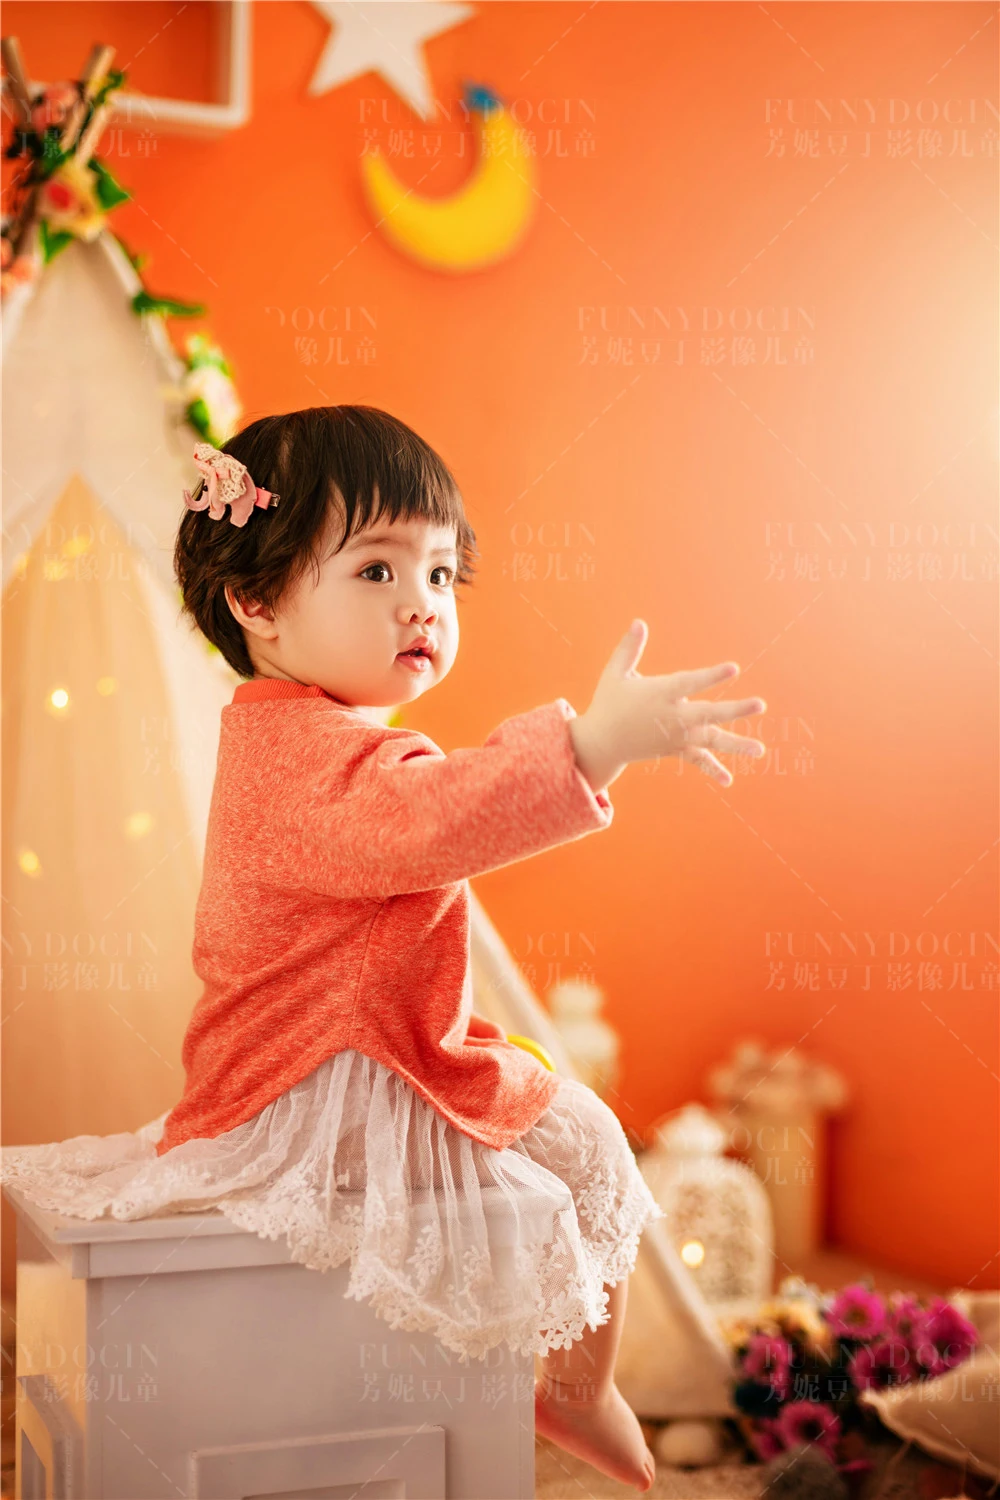 芳妮豆丁儿童摄影 ❤魔力橙色☀温暖你的秋日➷